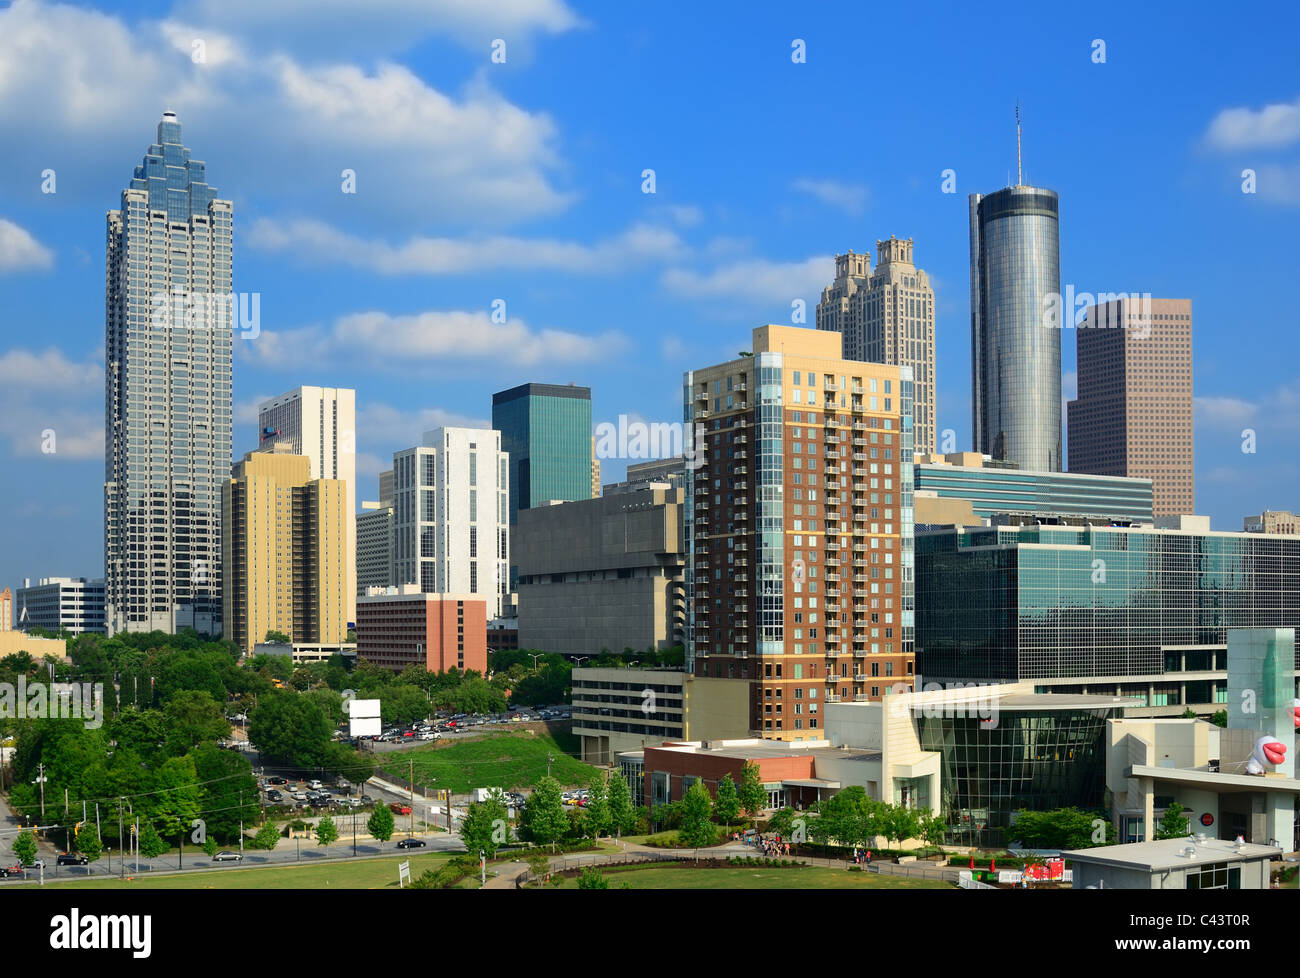 Skyline of downtown Atlanta, Georgia. Stock Photo